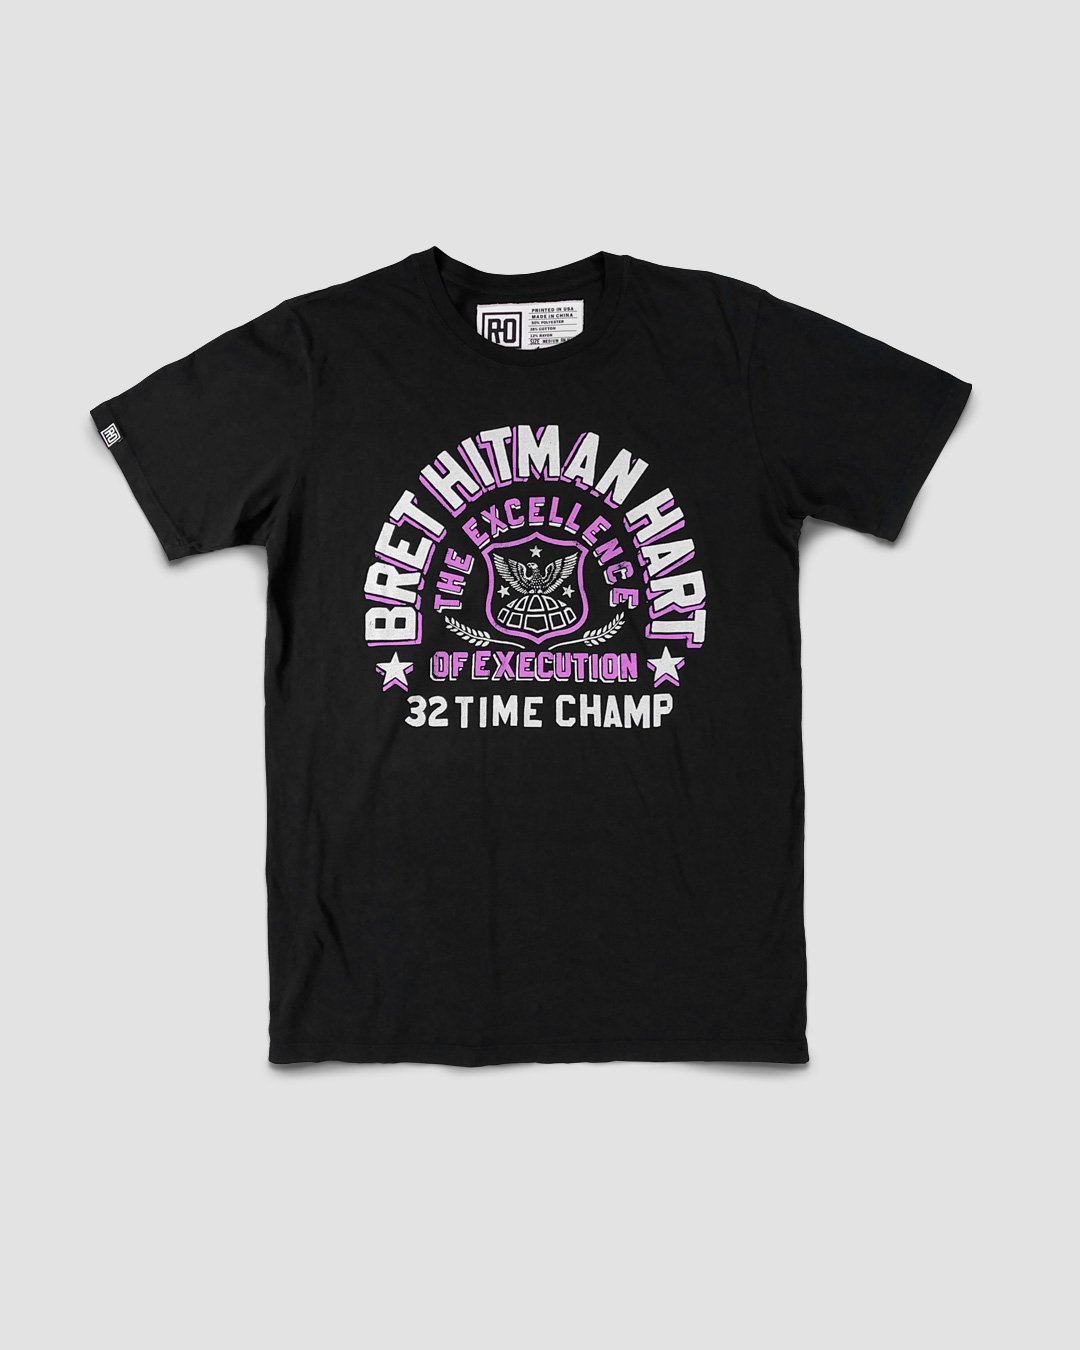 Bret Hart Pink Hoodie  Cm Punk Hitman 32 Time Champ Hoodie